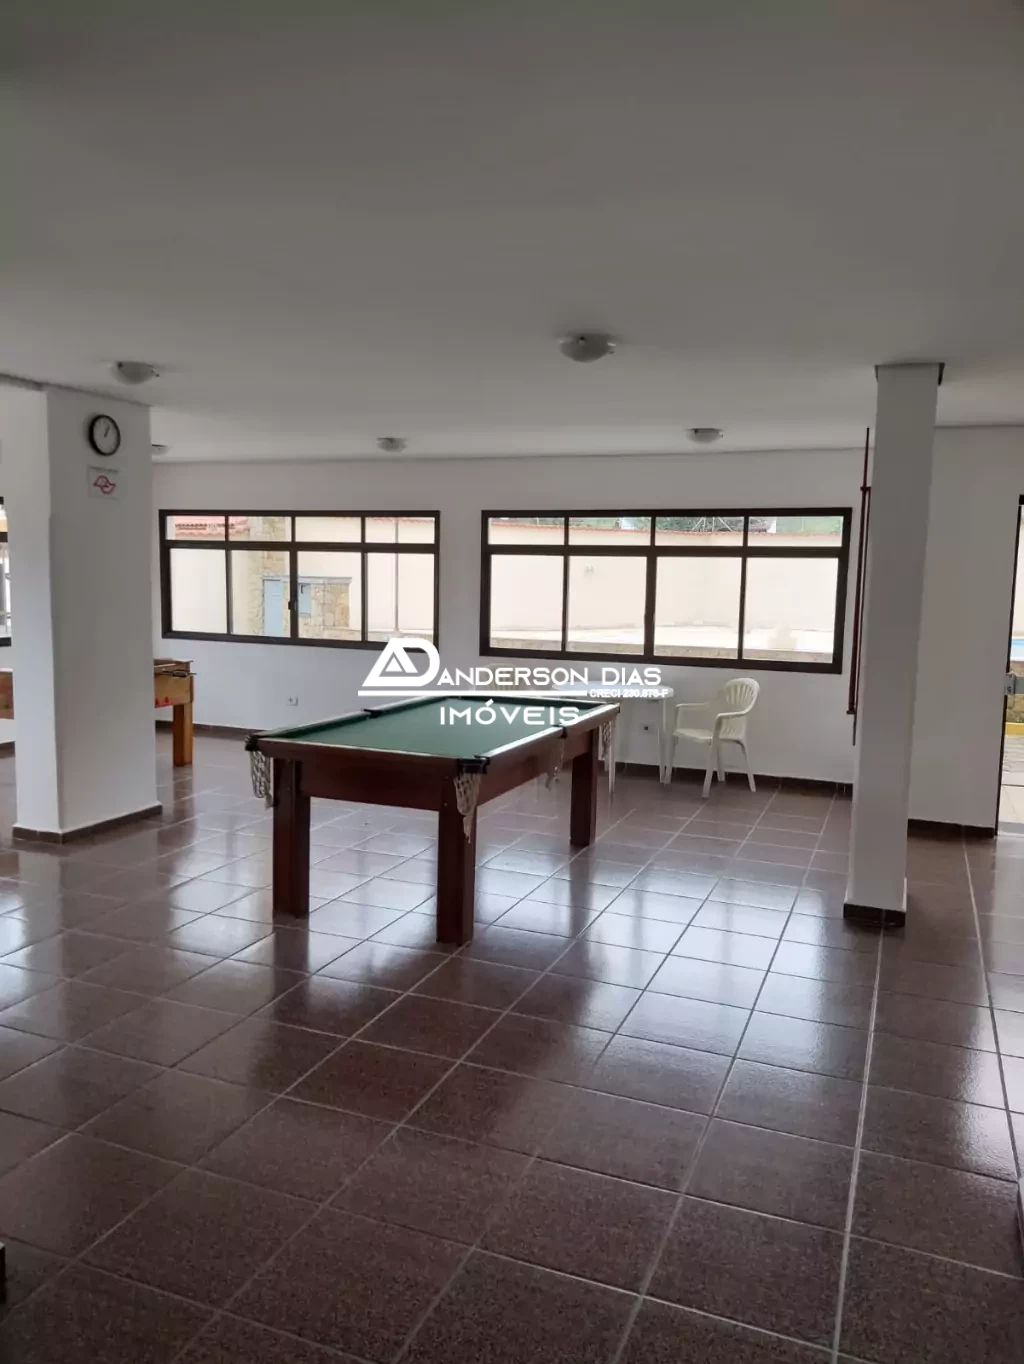 Apartamento com 3 dormitórios sendo 1 suíte á venda, 92m² por R$ 390.000 - Martim de Sá - Caraguatatuba/SP